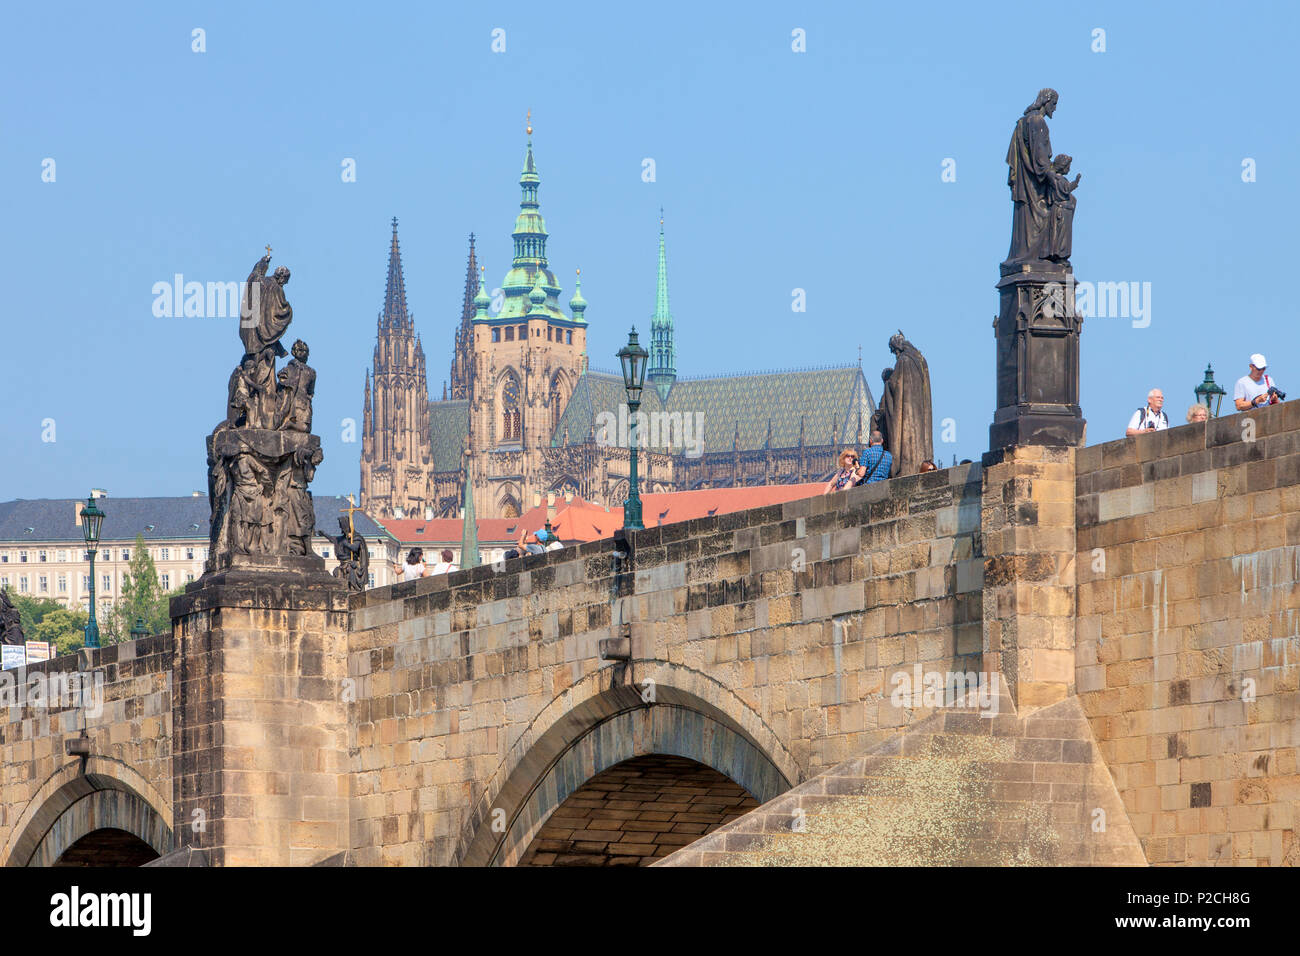 Tschechische Republik, Prag - Karlsbrücke, Hradschin Schloss, die St. Vitus Kathedrale "s Stockfoto